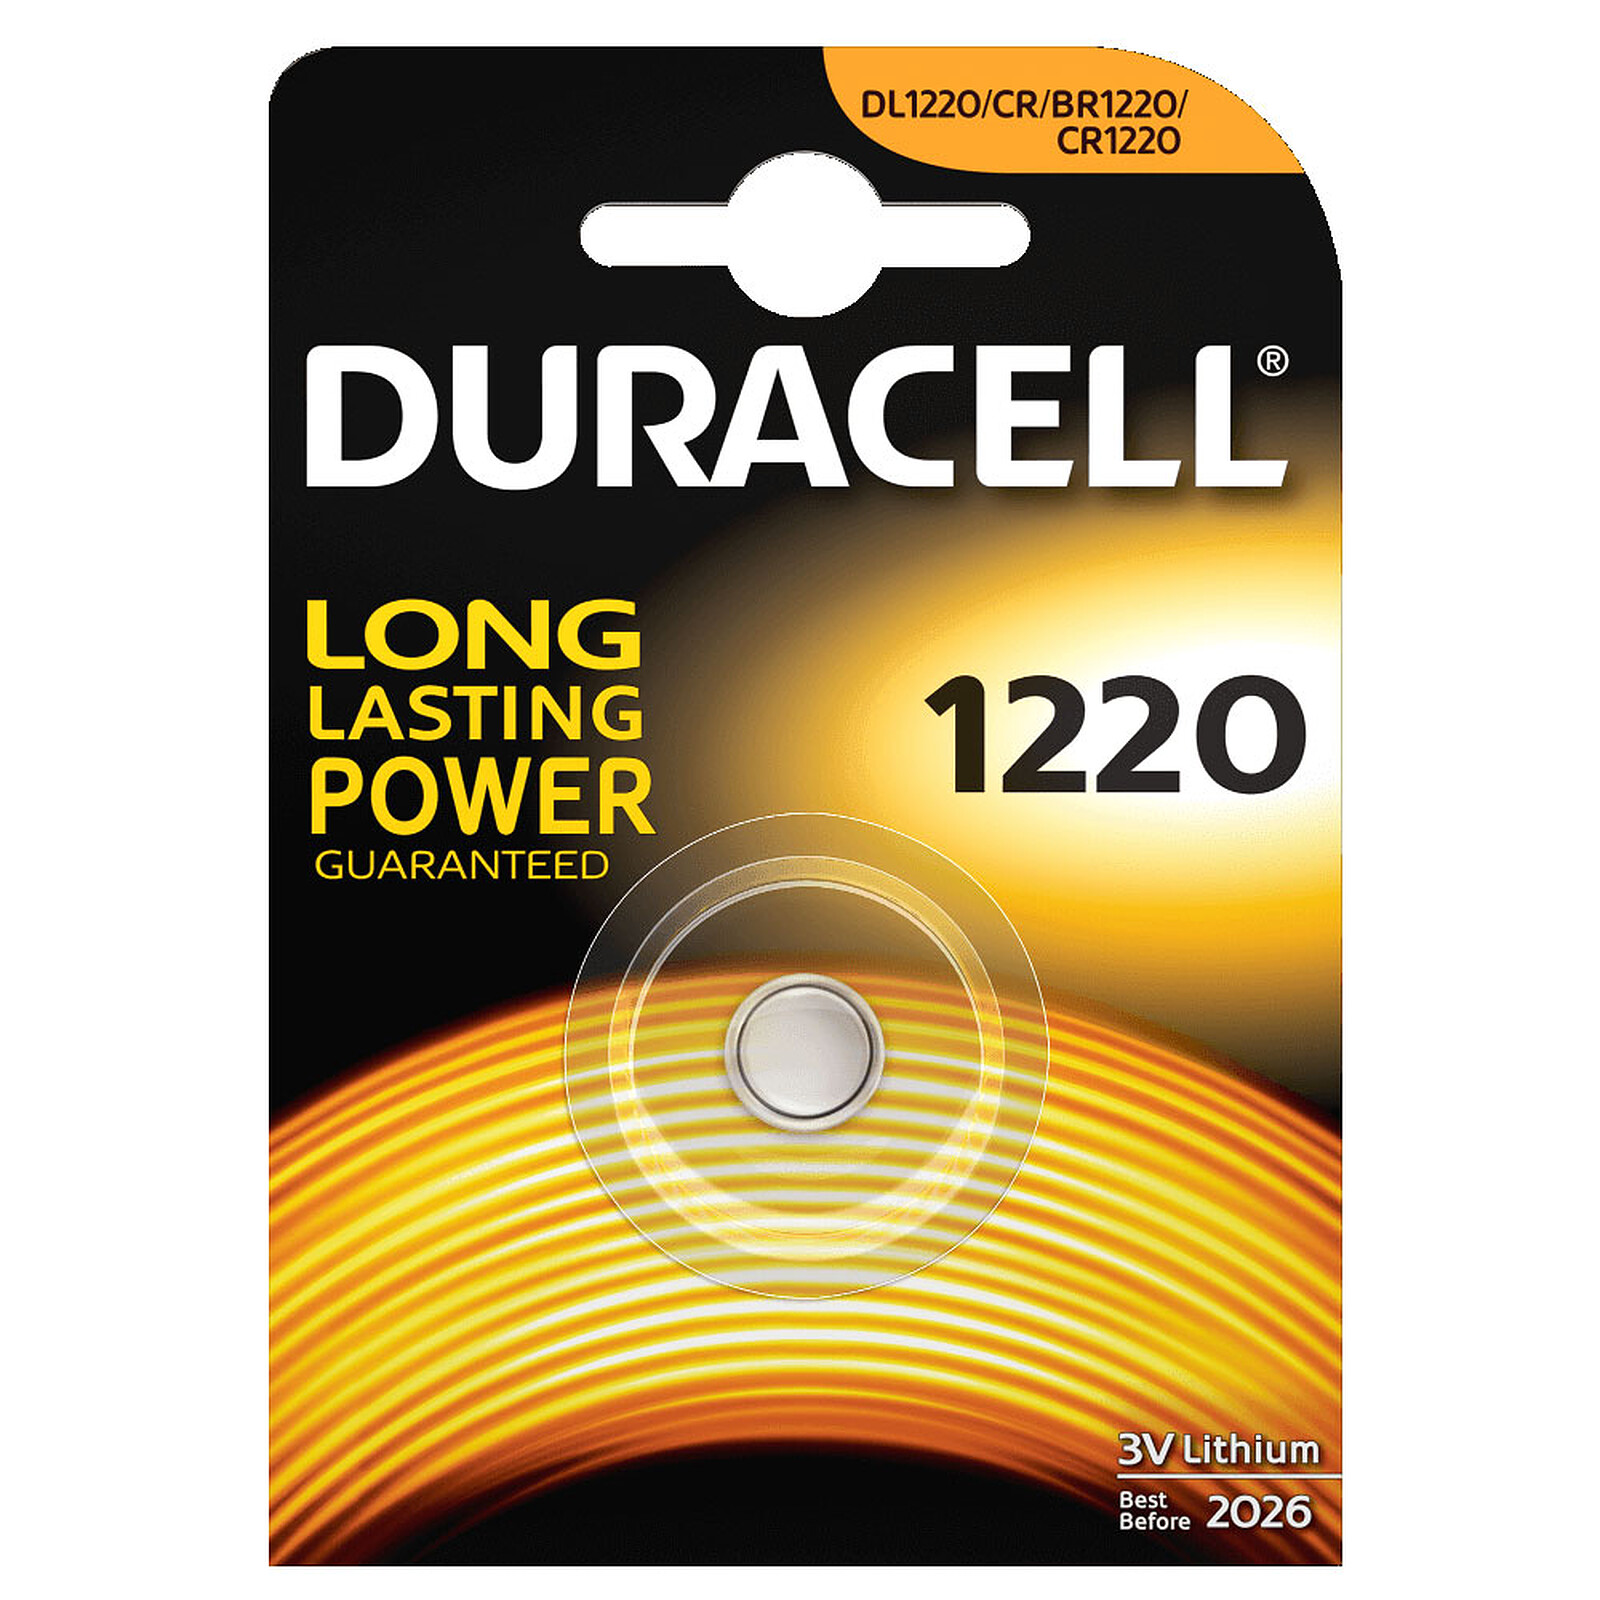 Duracell 1220 Lithium 3V